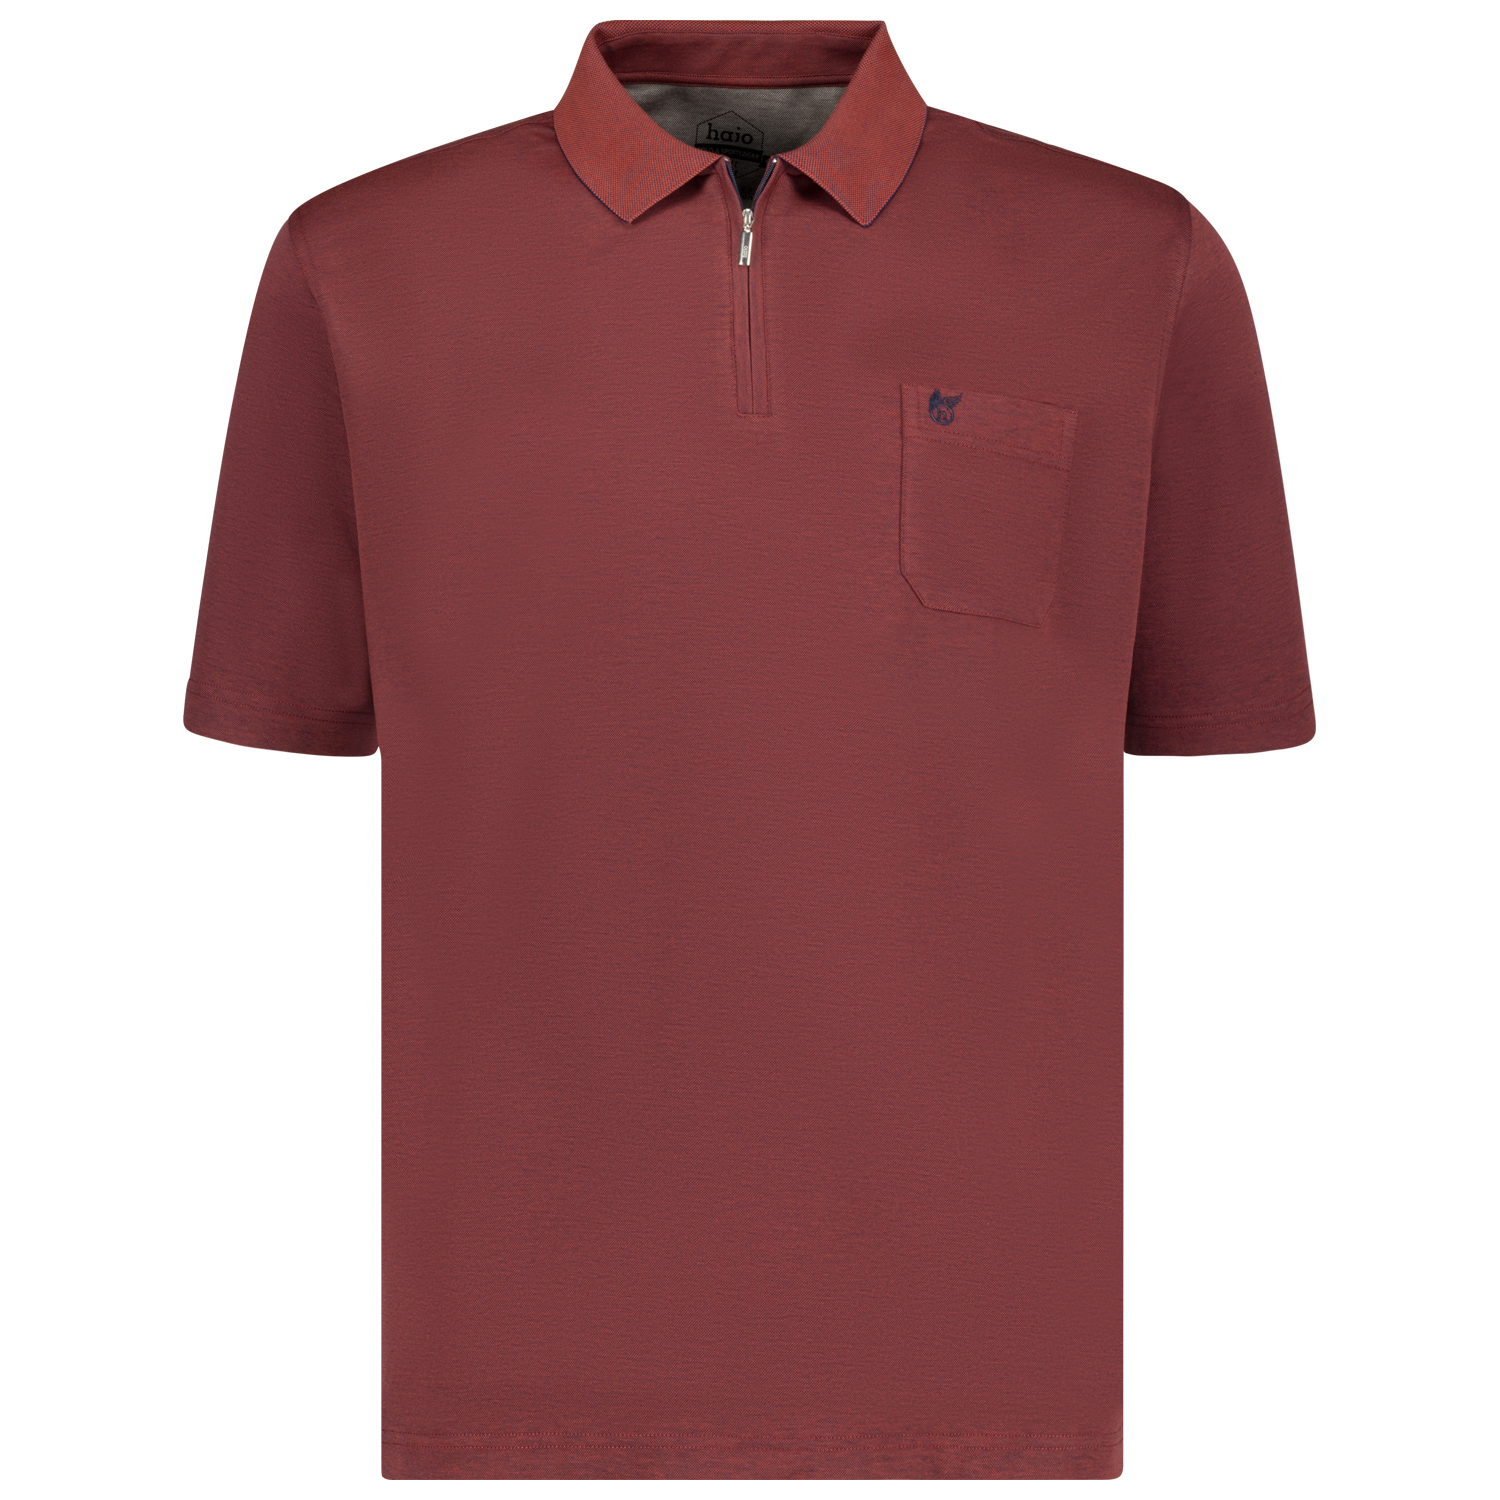 Rot- meliertes Poloshirt SOFTKNIT für Herren von hajo kurzarm in Übergrößen 3XL bis 6XL